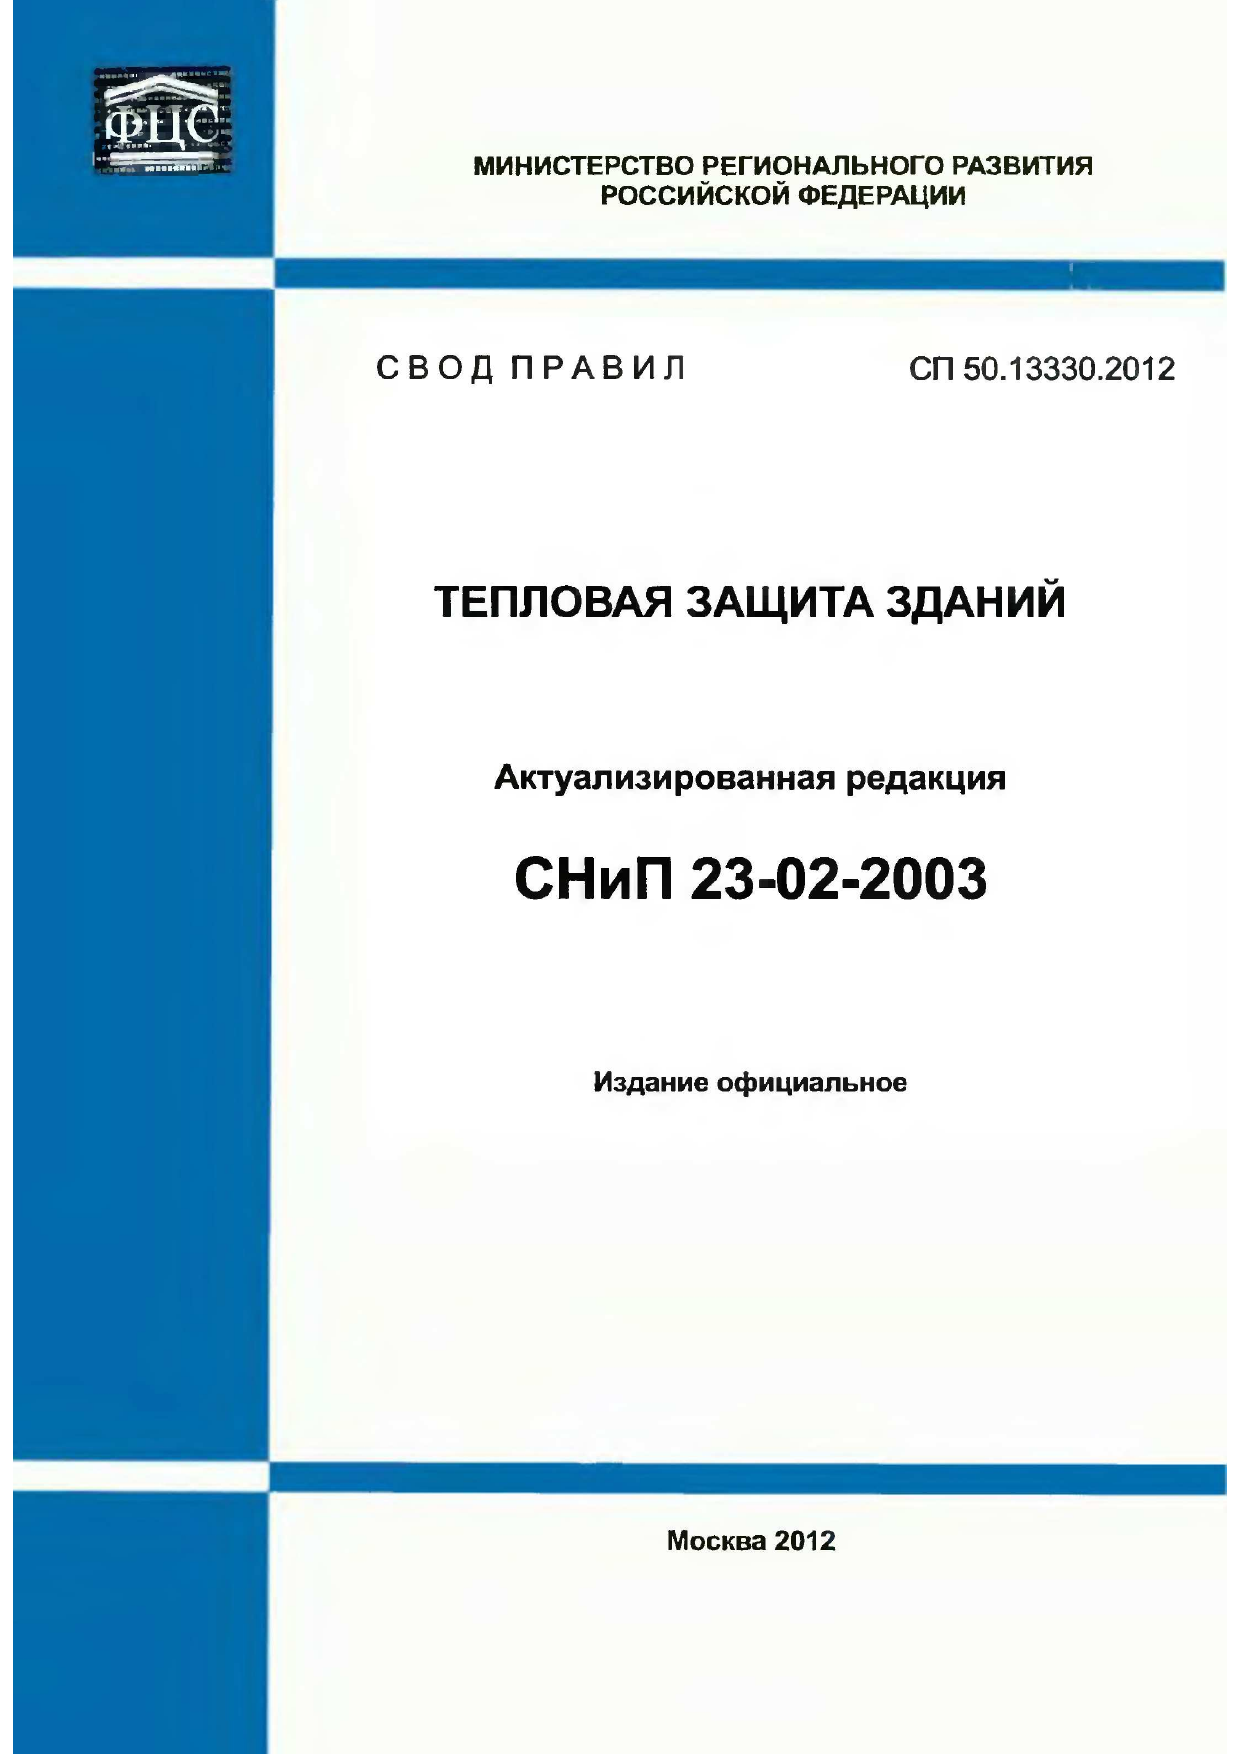 61.13330 2012 статус